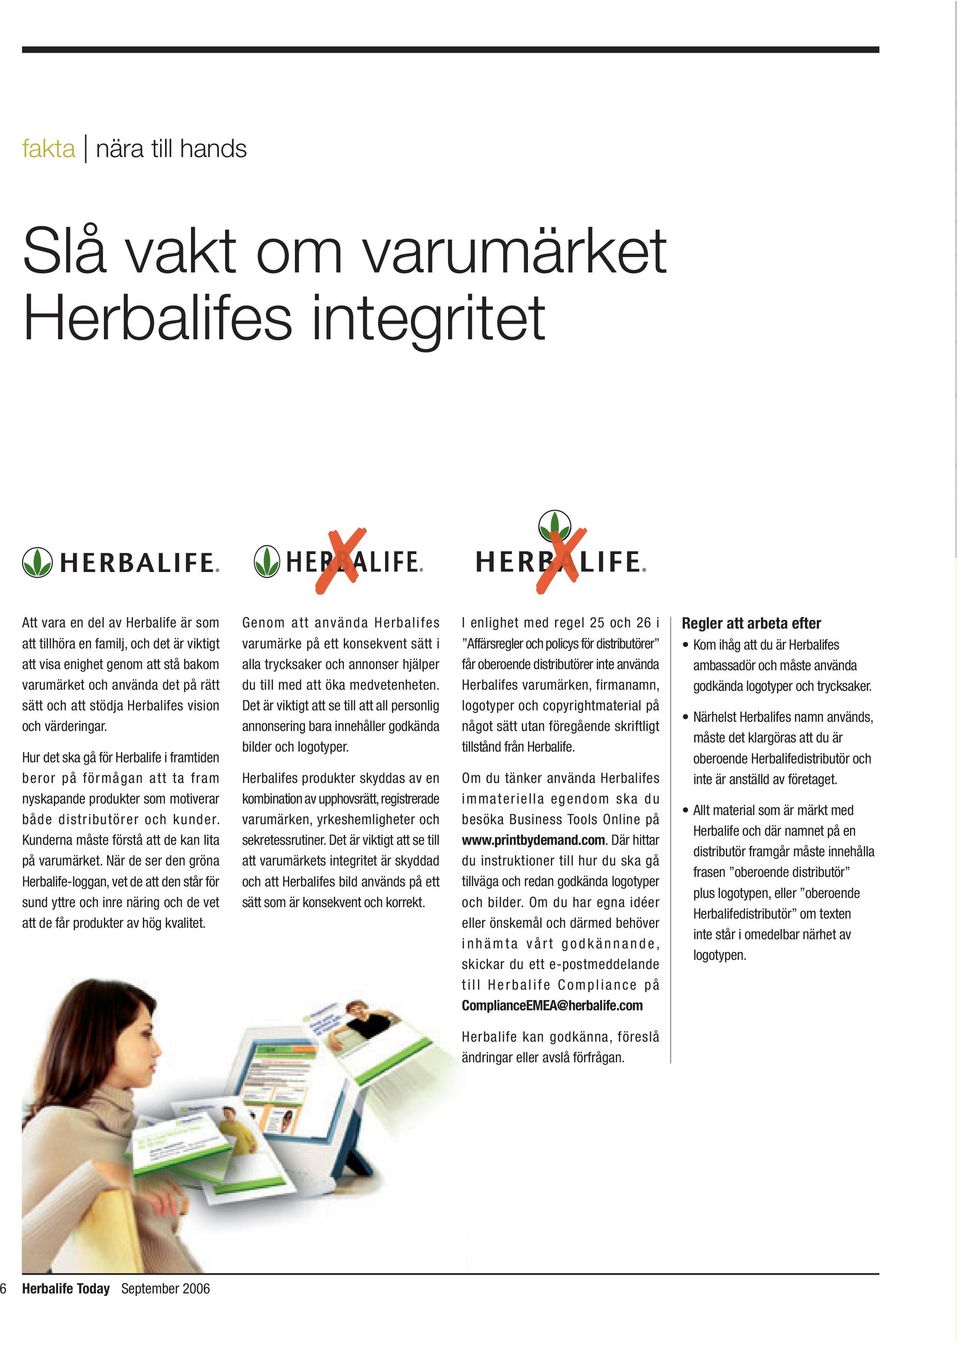 Hur det ska gå för Herbalife i framtiden beror på förmågan att ta fram nyskapande produkter som motiverar både distributörer och kunder. Kunderna måste förstå att de kan lita på varumärket.